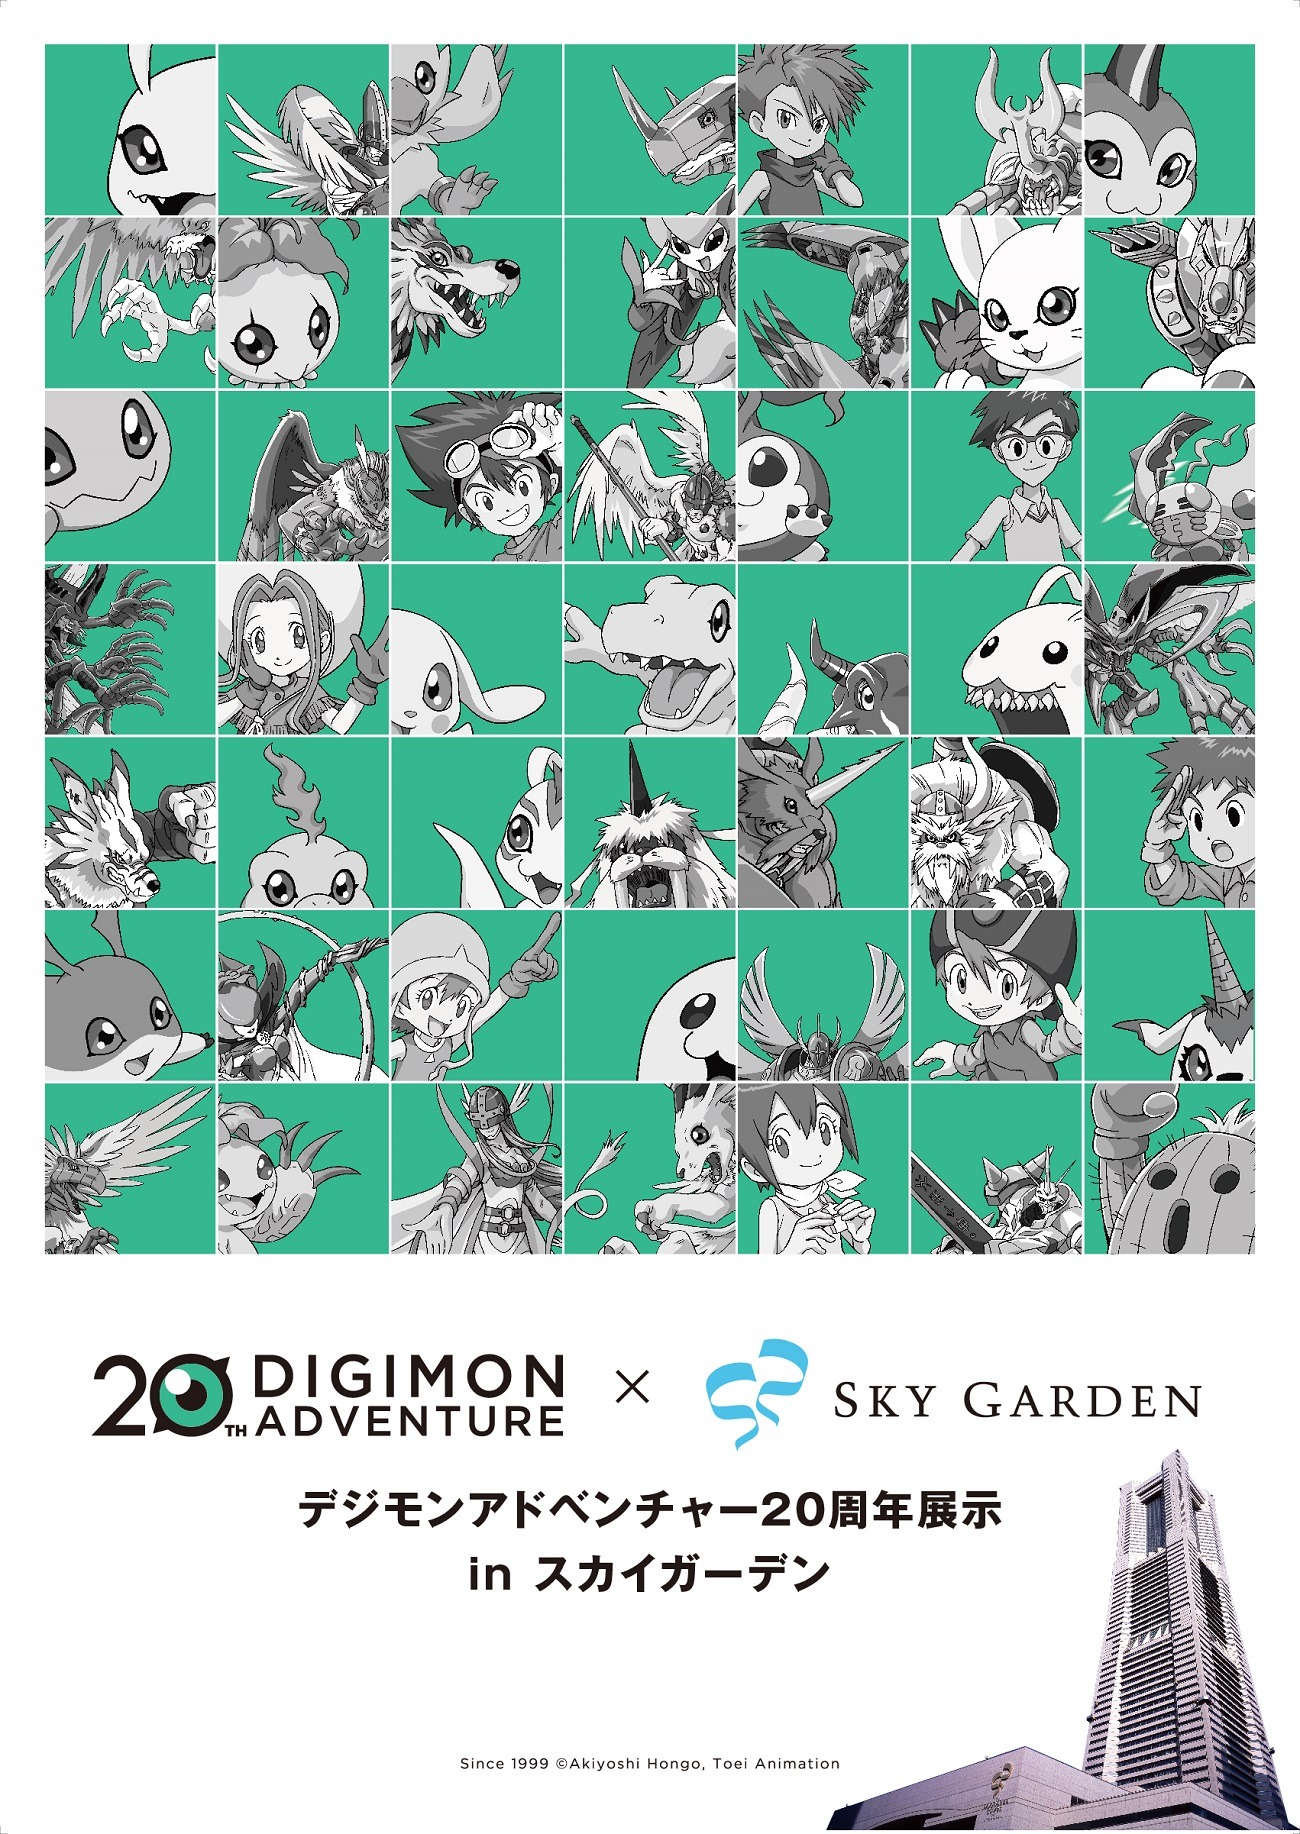 デジモン 年の歴史が横浜に 歴代シリーズの設定資料展示など実施 アニメ アニメ